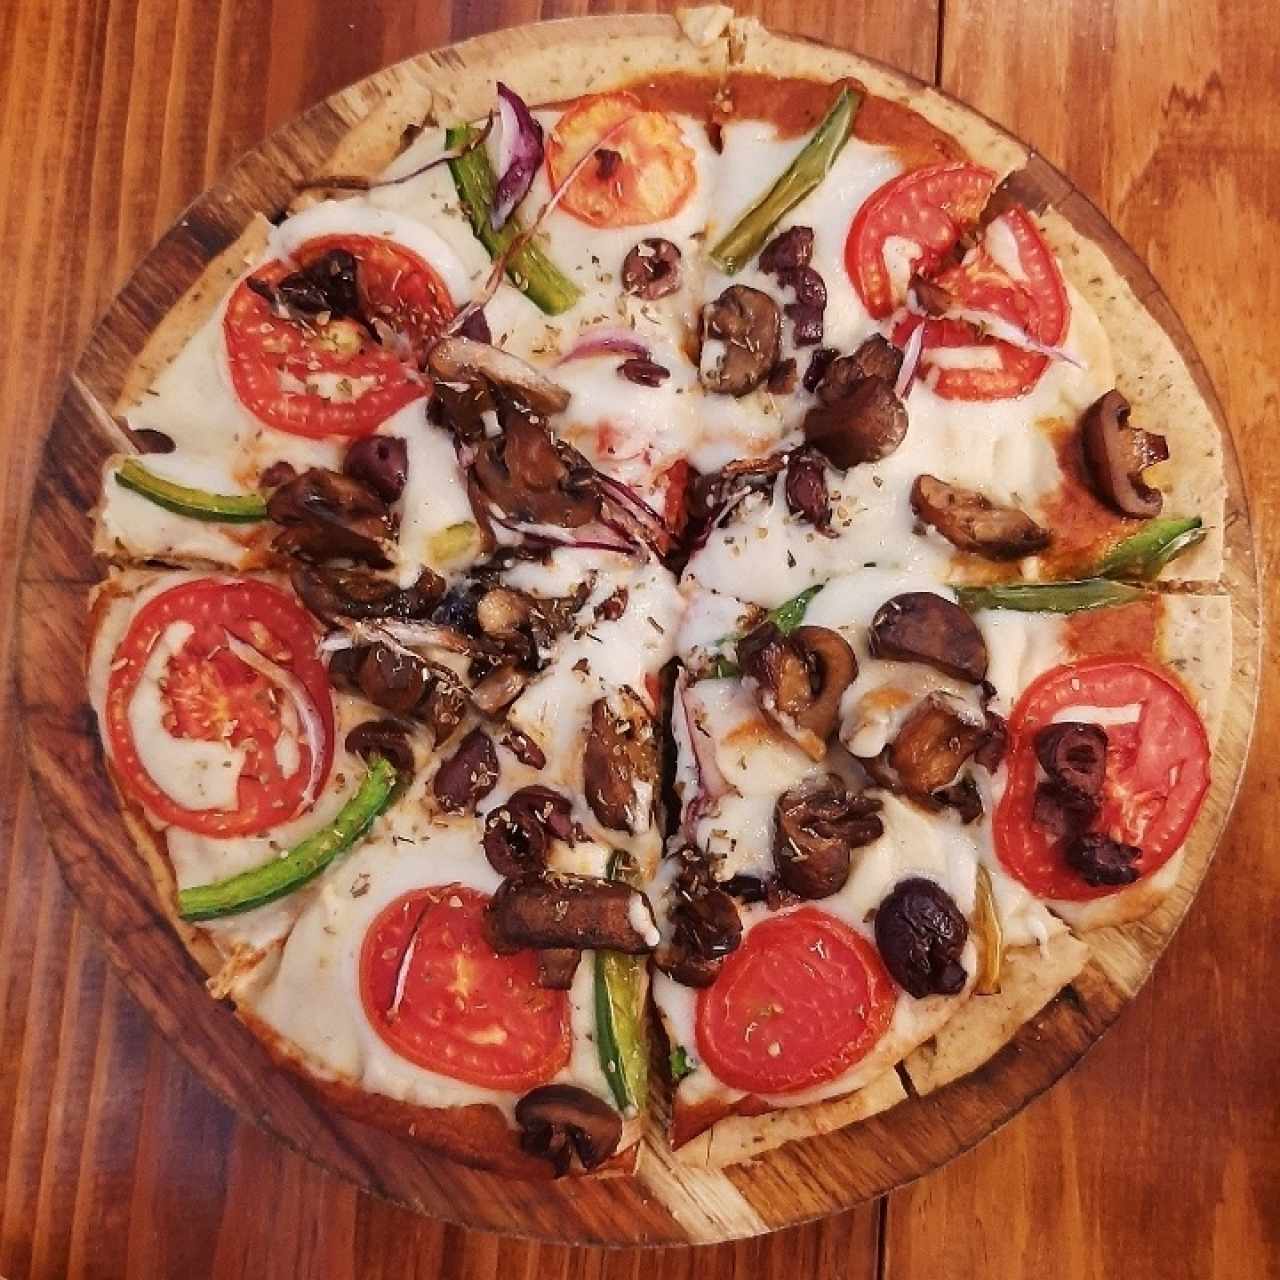 Pizza Vegana